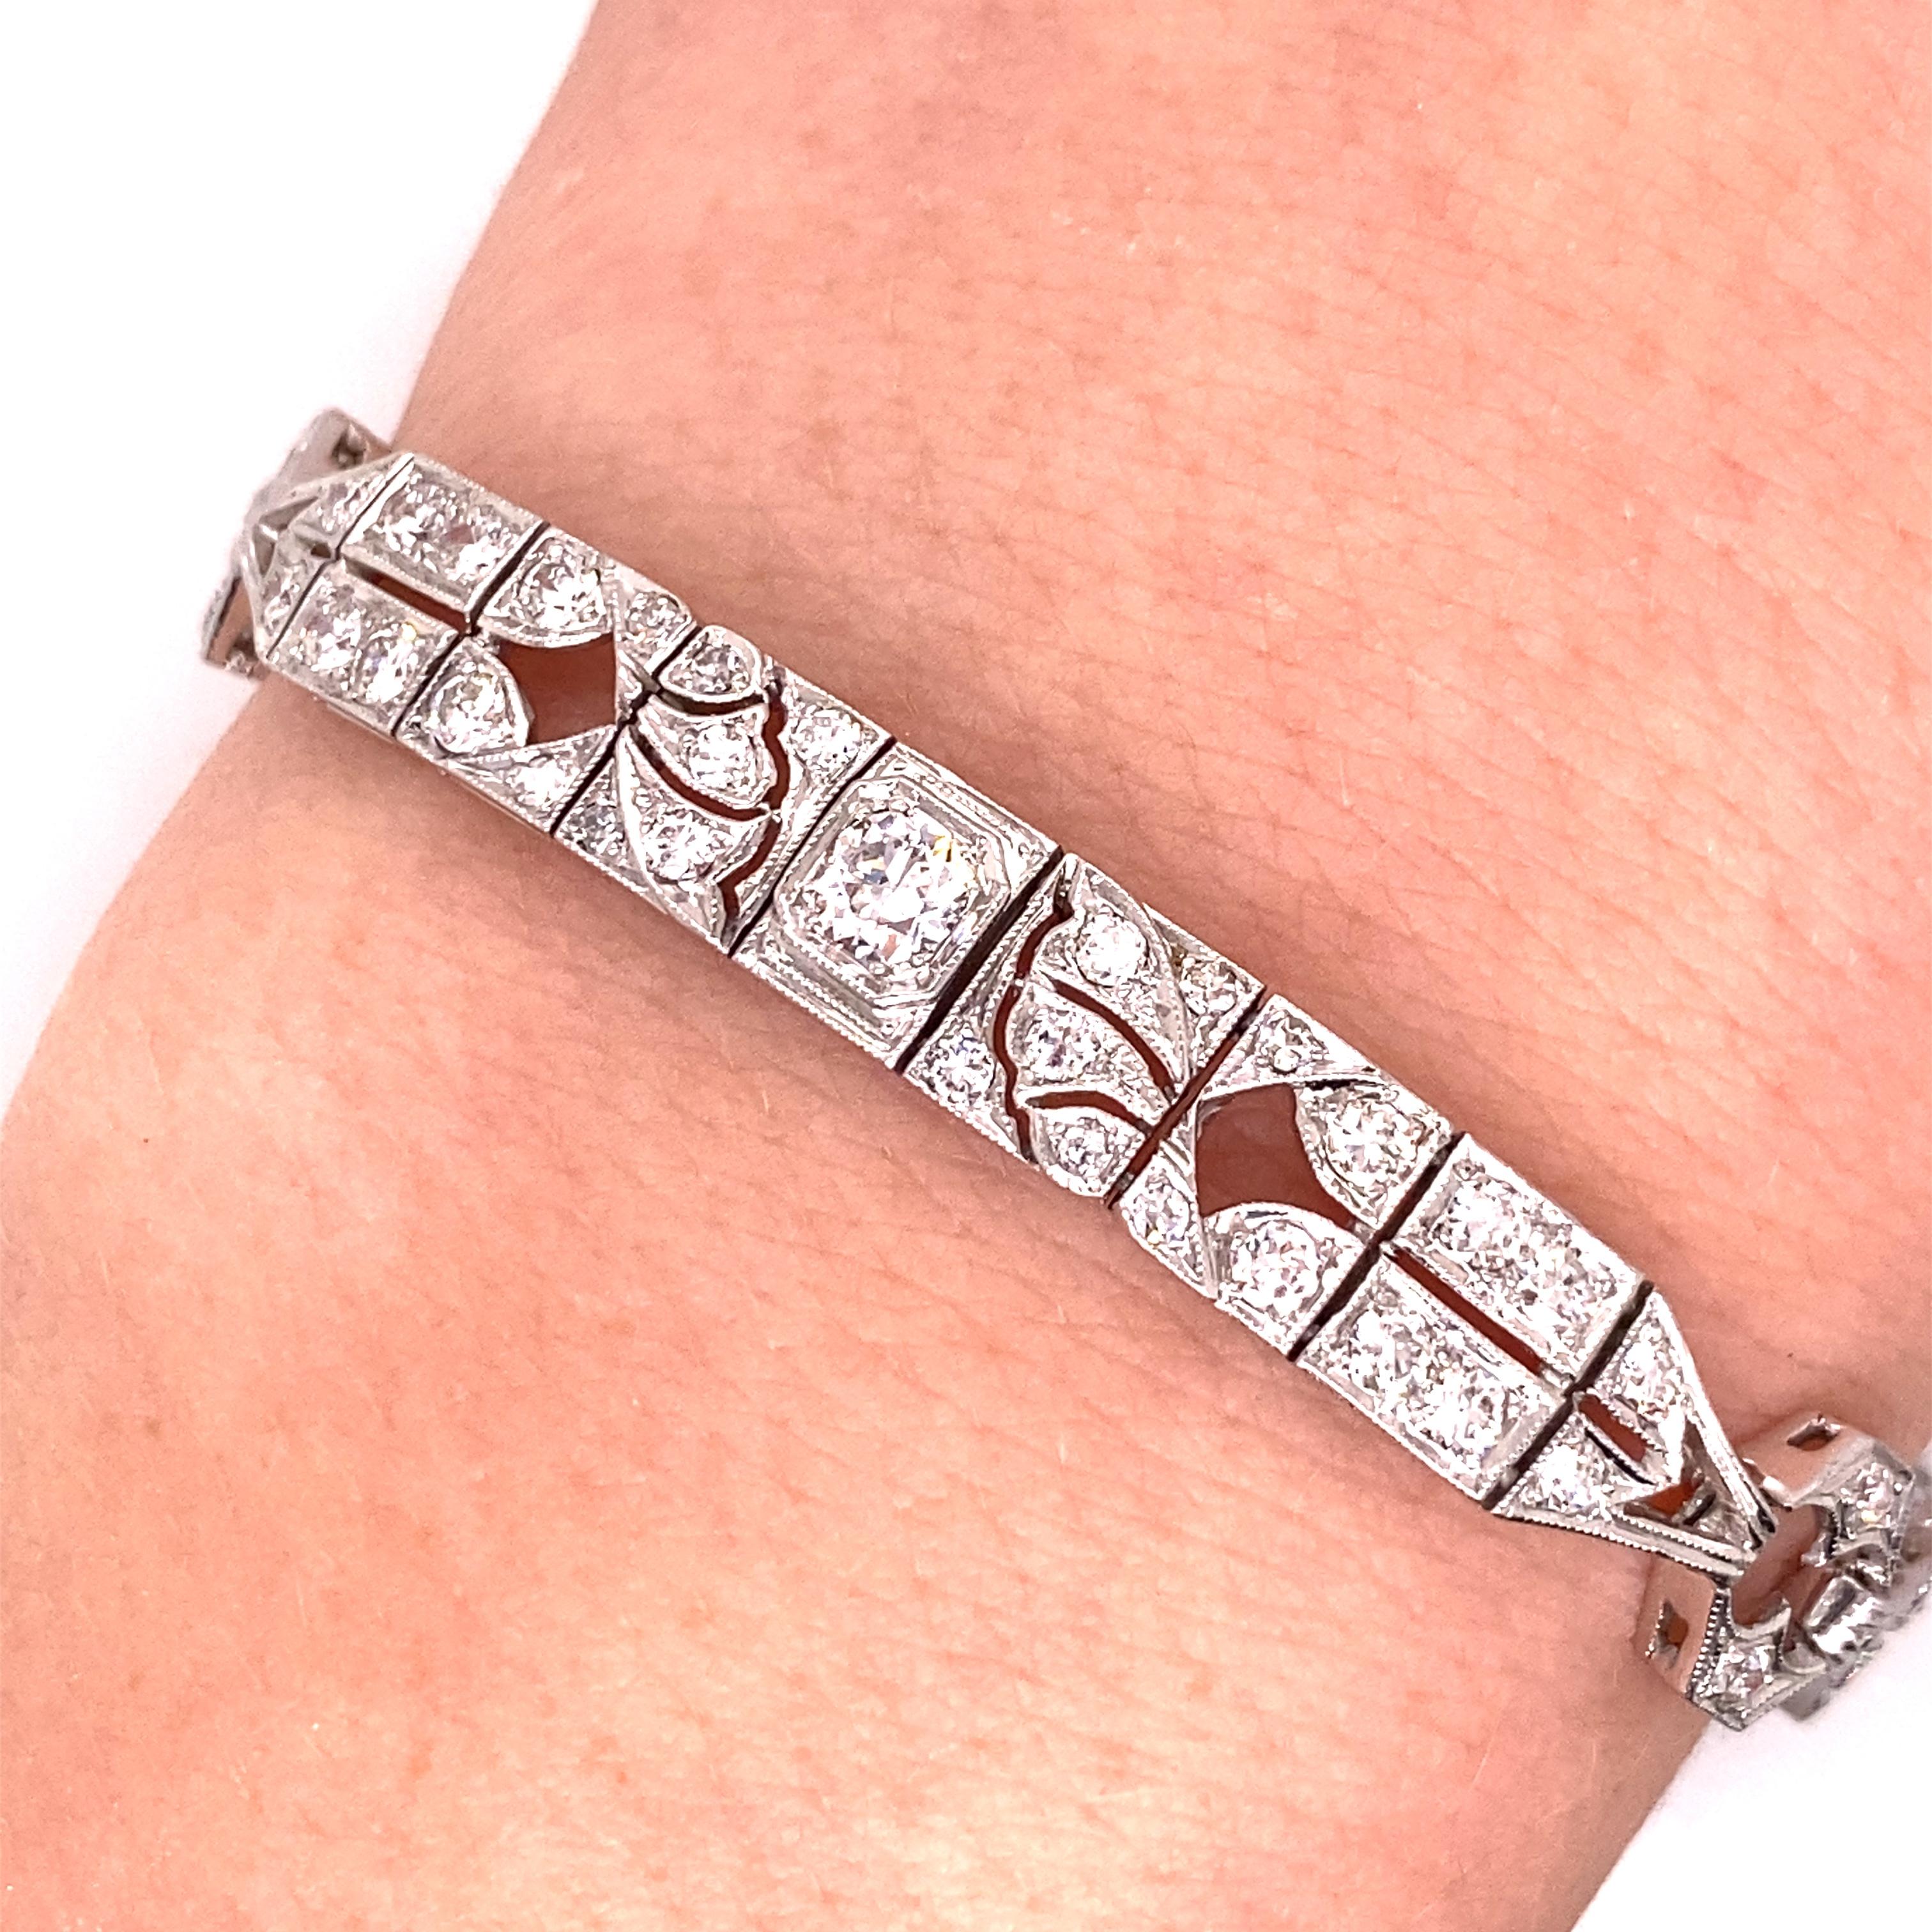 Vintage 1930's Art Deco Platinum Diamond Bracelet 3.00ct - Das Armband enthält 3 europäische geschliffene Diamanten, die insgesamt etwa .70ct wiegen und weitere 126 kleinere europäische und einzelne geschliffene Diamanten, die insgesamt etwa 2.30ct